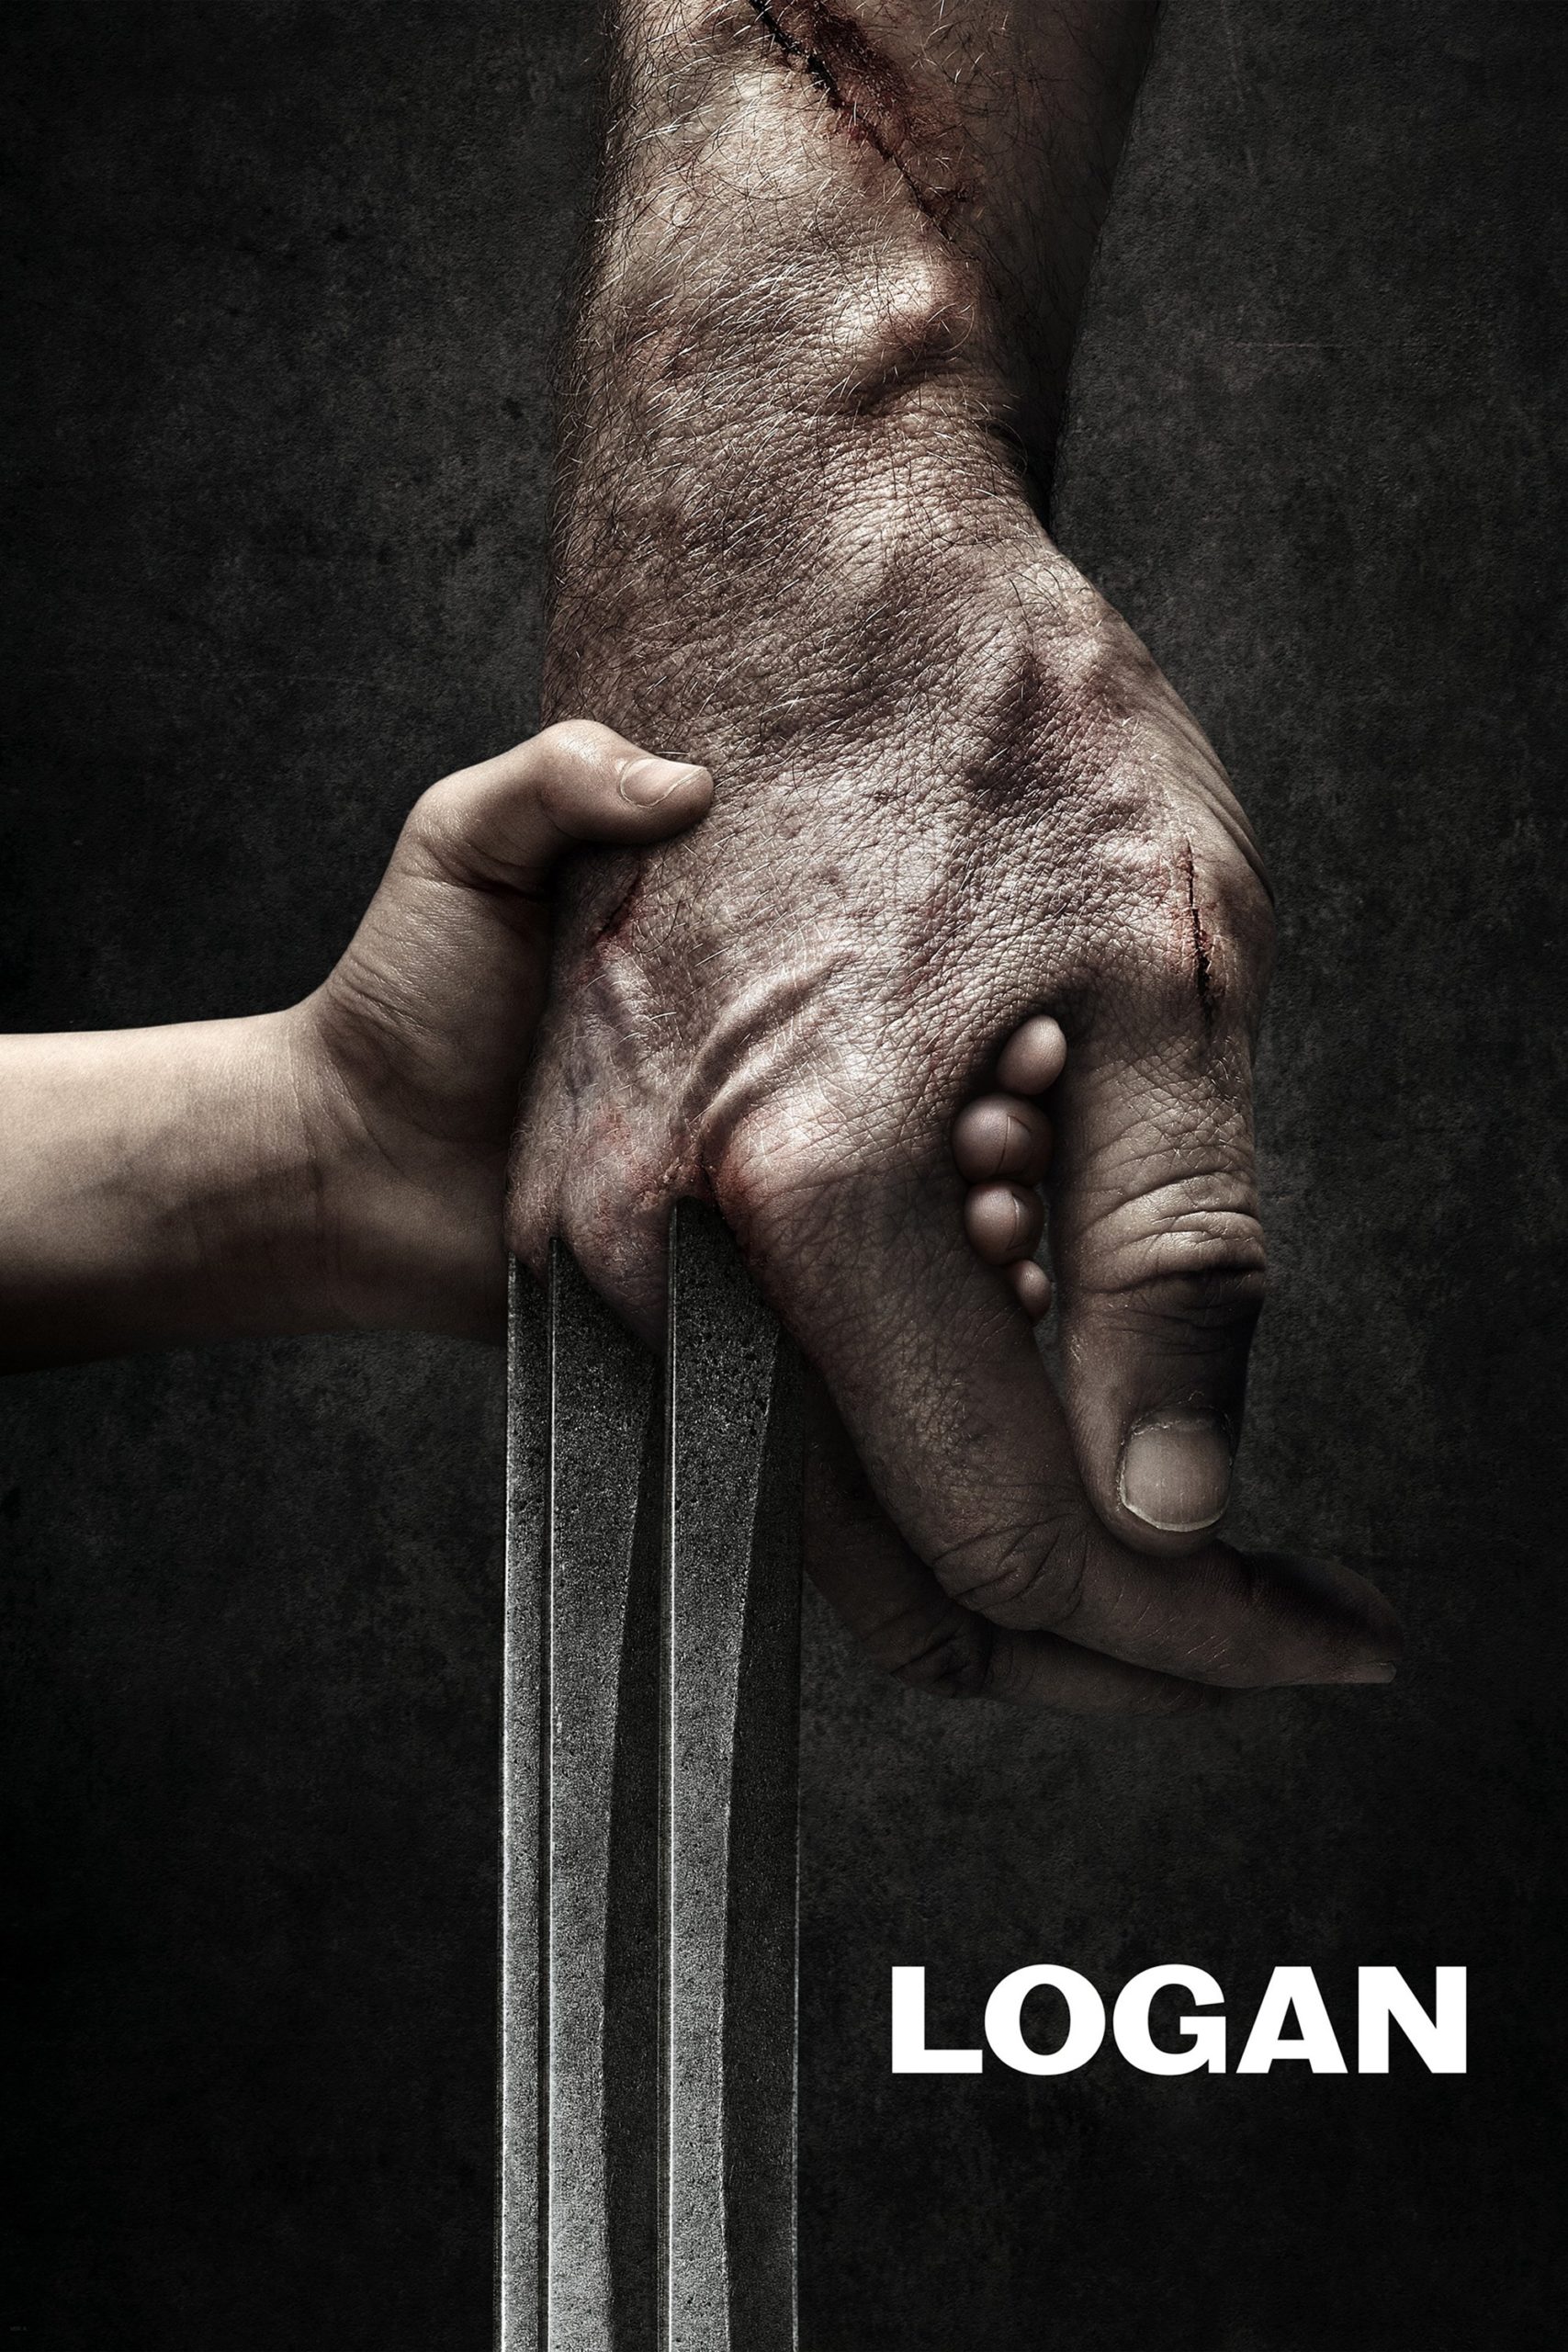 Poster de la película "Logan"